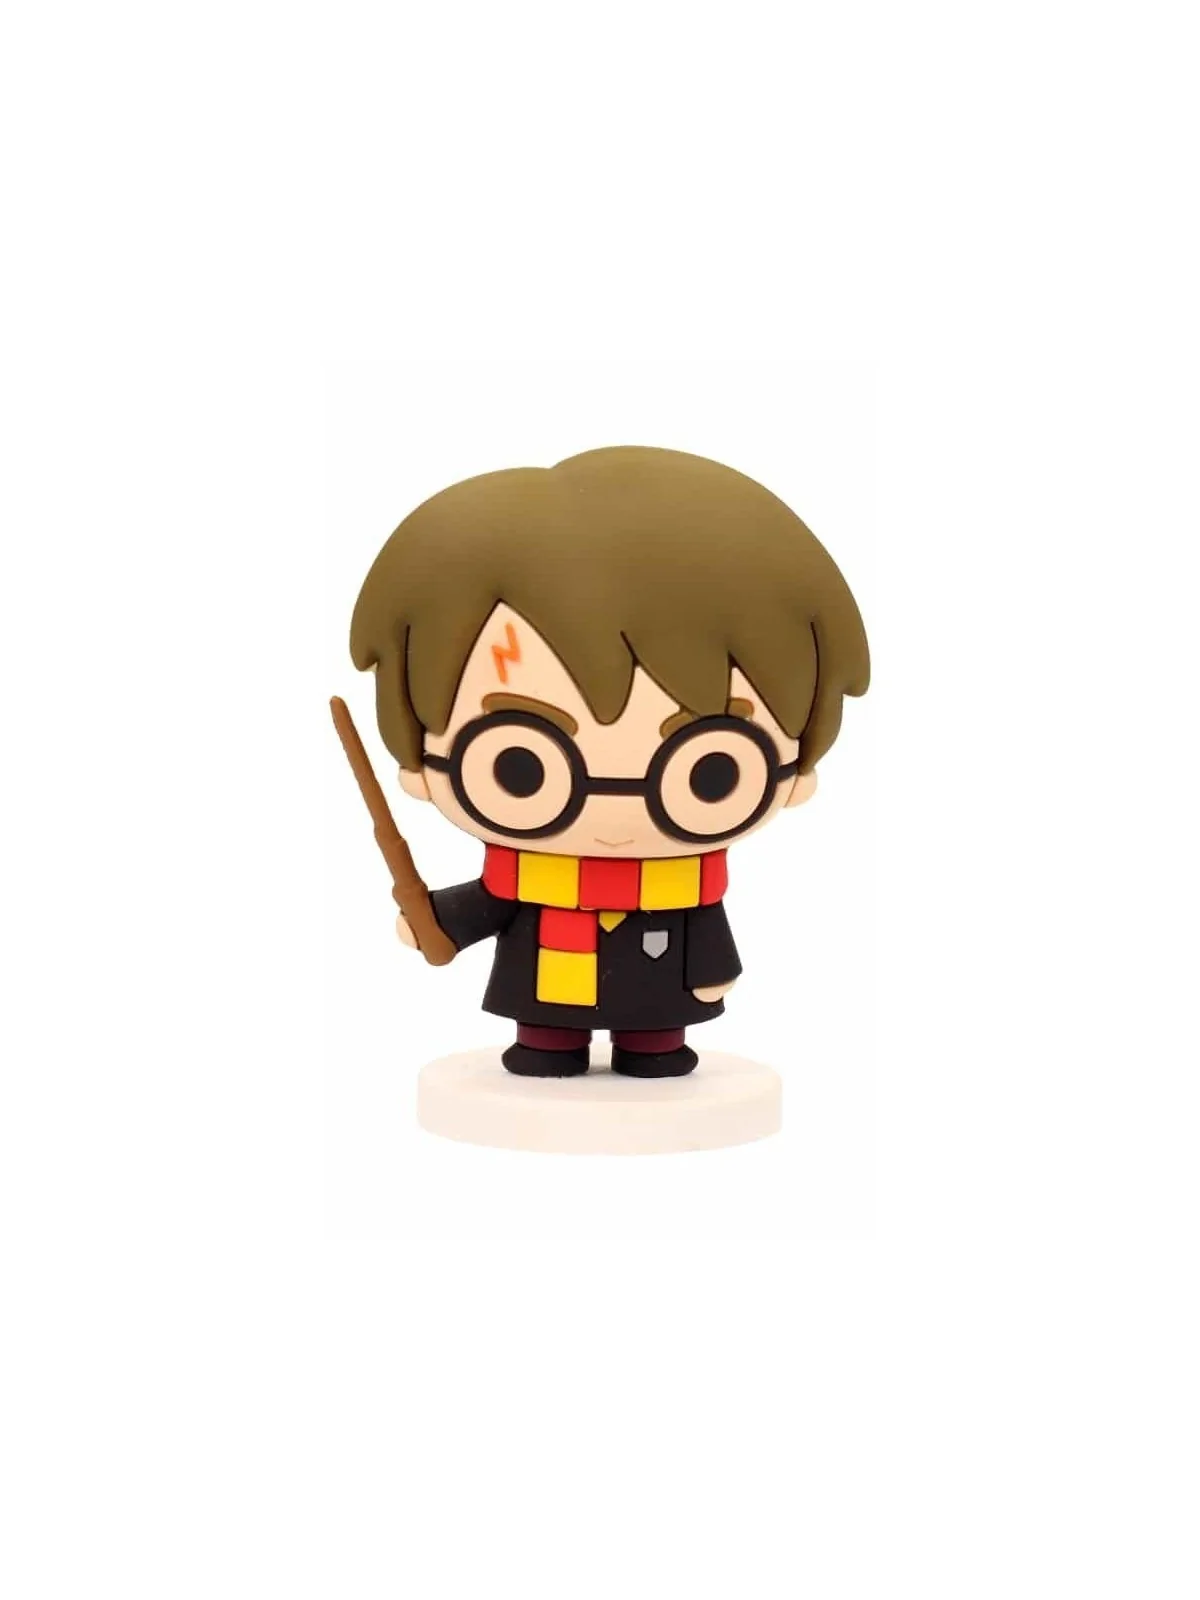 Comprar Mini Figura Harry Potter Roja 6 cm barato al mejor precio 9,50